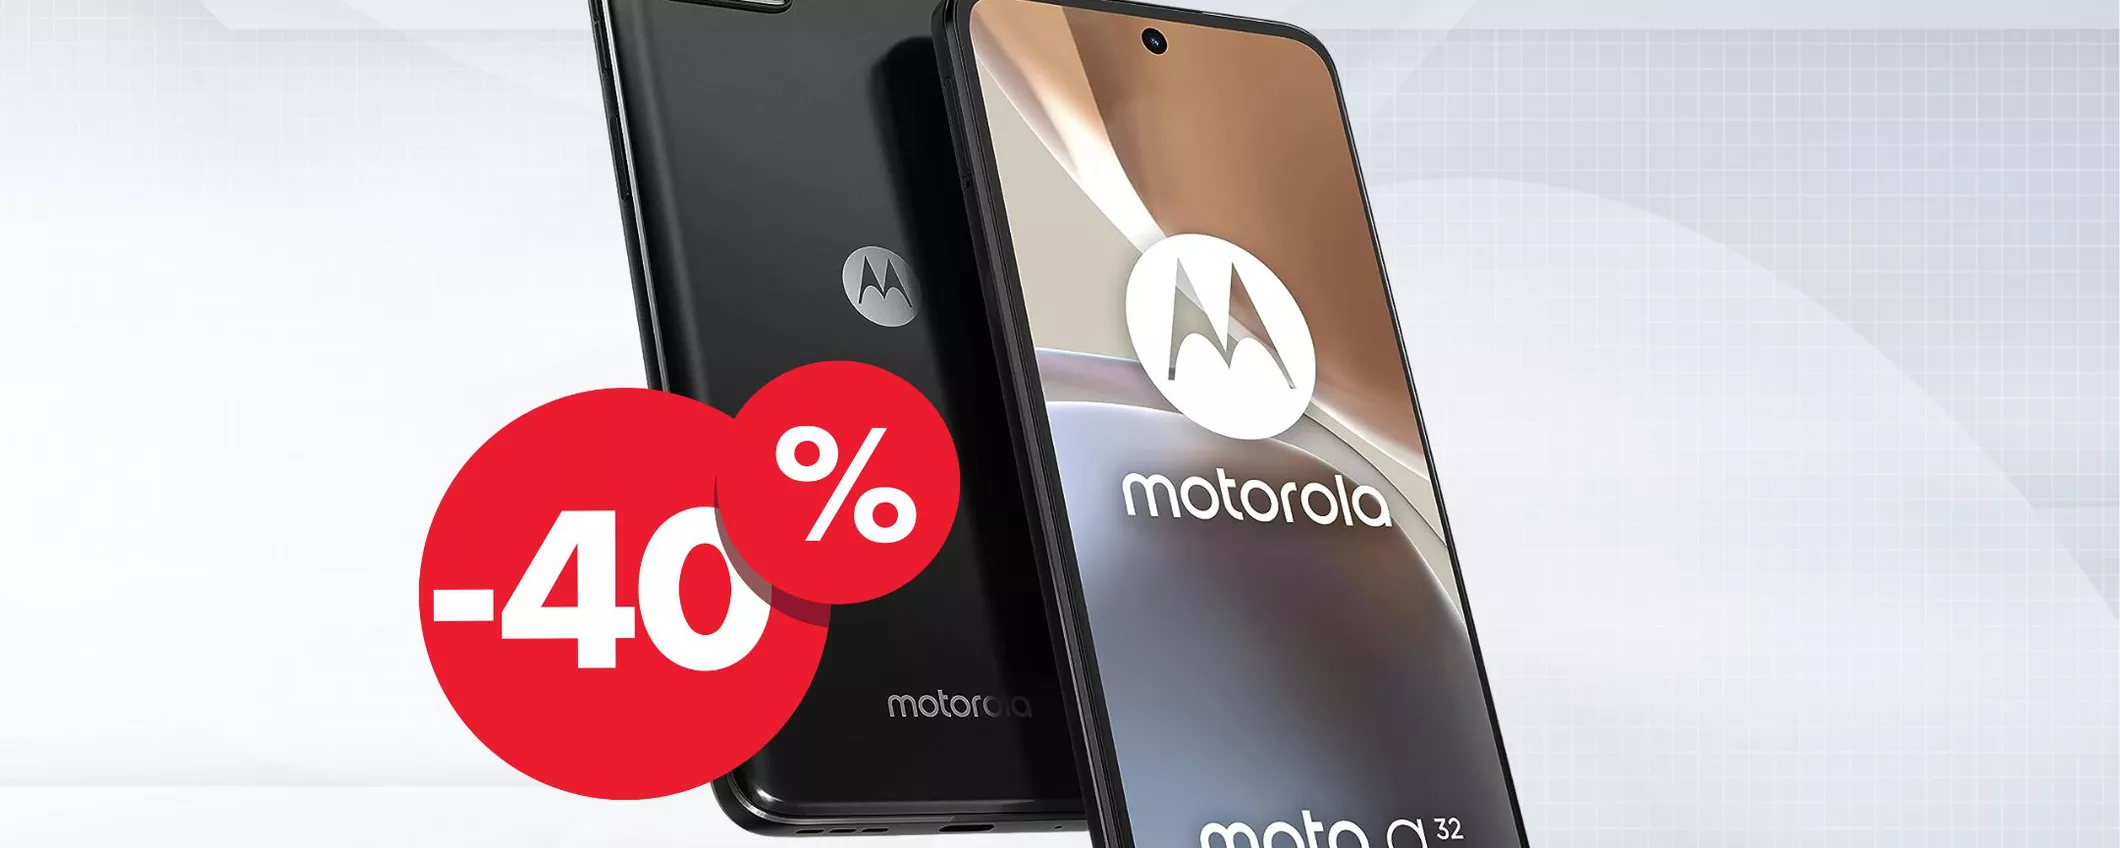 Motorola moto g32: TRIPLA FOTOCAMERA a prezzo REGALO di appena 100€ su Amazon!